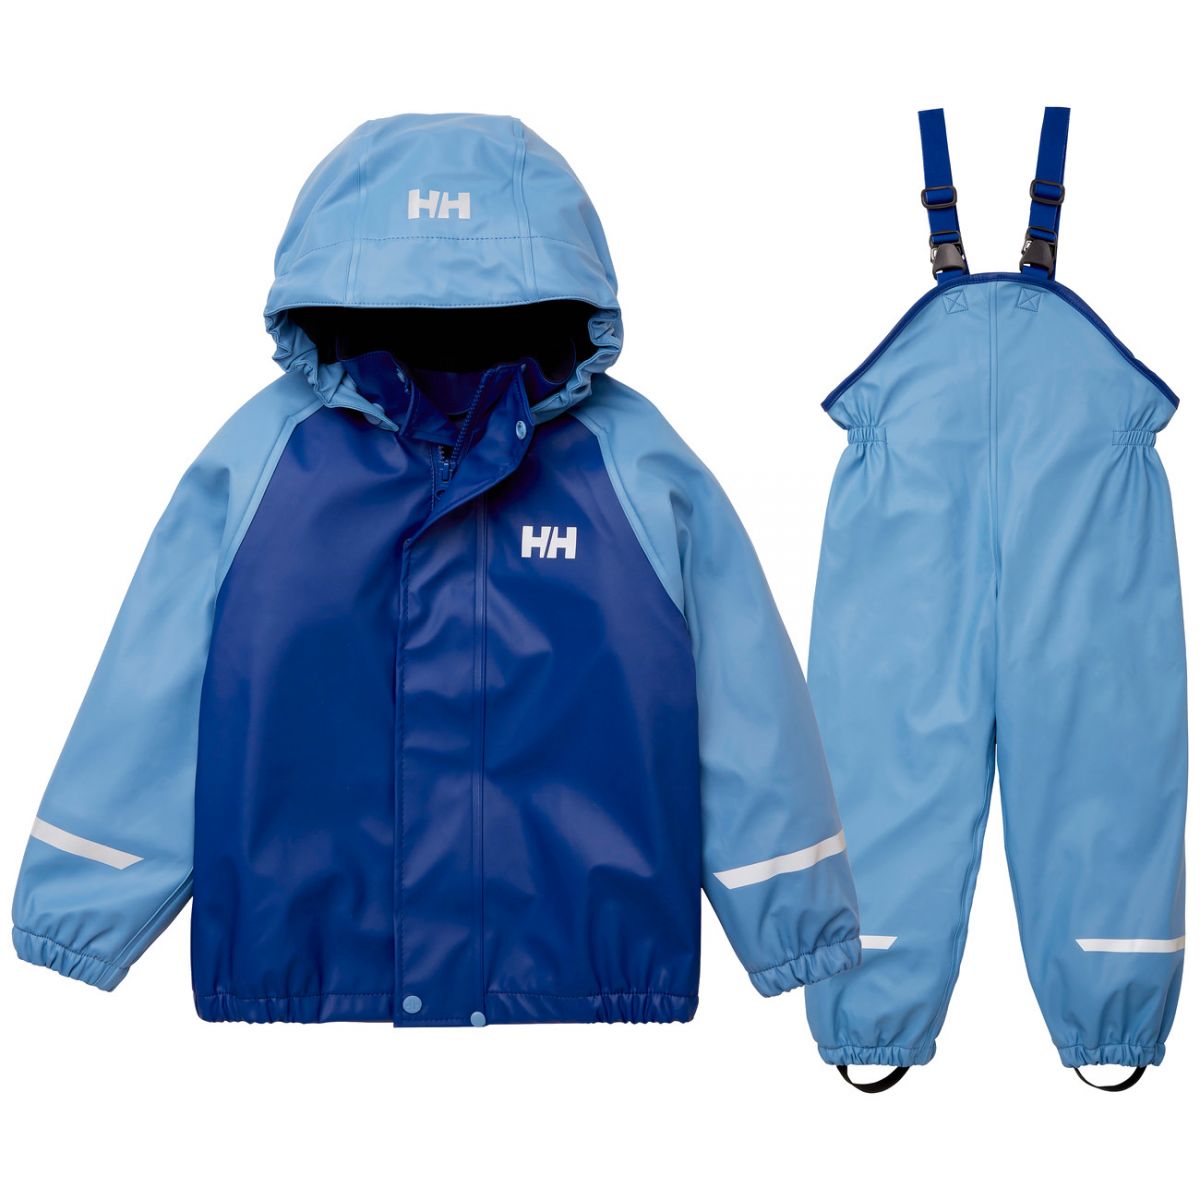 Brug Helly Hansen Bergen Fleece PU 2.0, regnsæt, børn, blå til en forbedret oplevelse